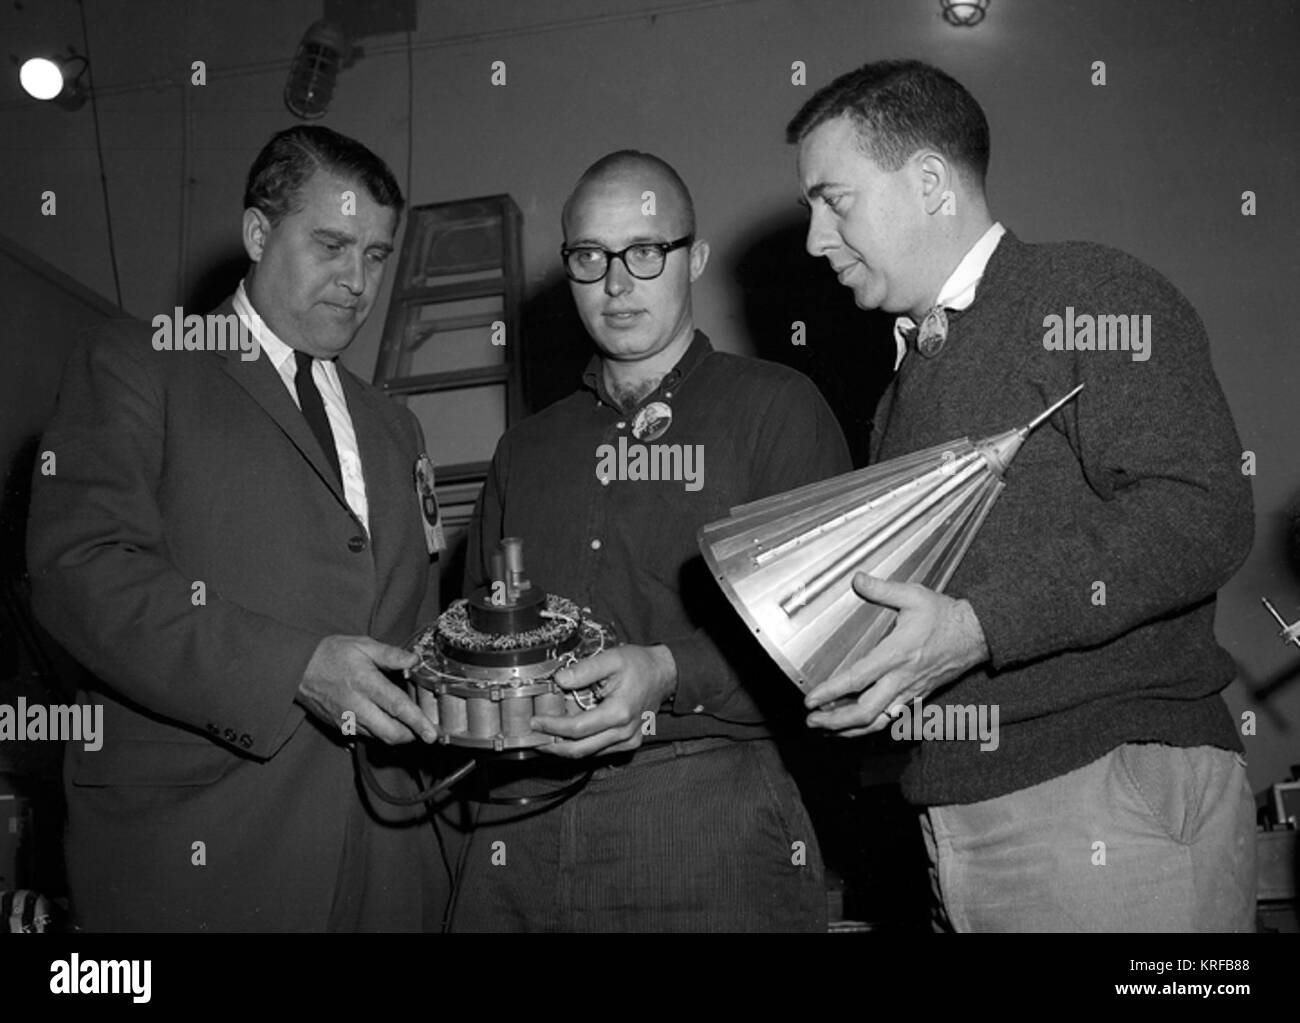 DR. VON BRAUN LOOKING AT PAYLOAD OF JUNO II AM-14, PIONEER IV SATELLITE. MARCH 1, 1959 REF: MFL-59-293.1 (MIX FILE) Pioneer 4 von Braun inspection Stock Photo